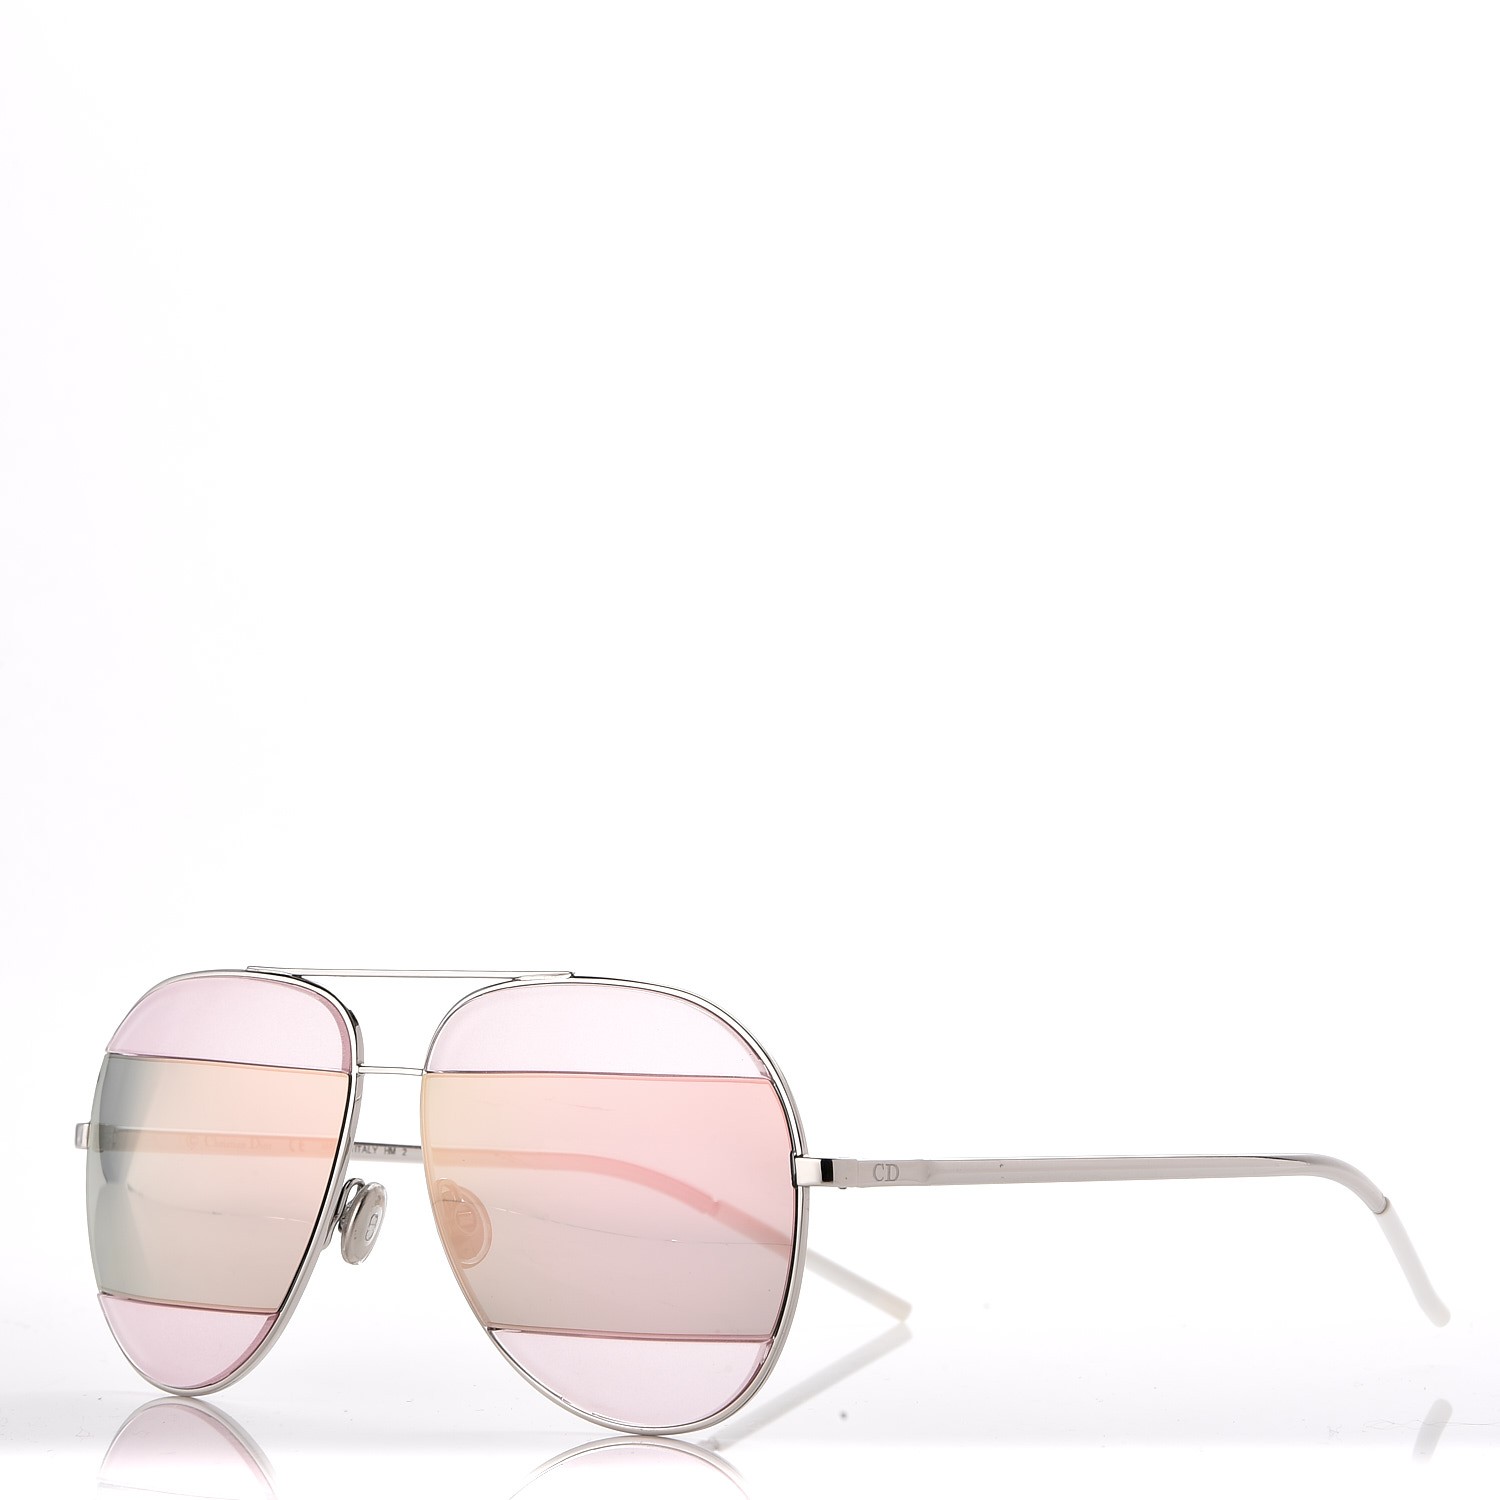 dior split sunglasses pink